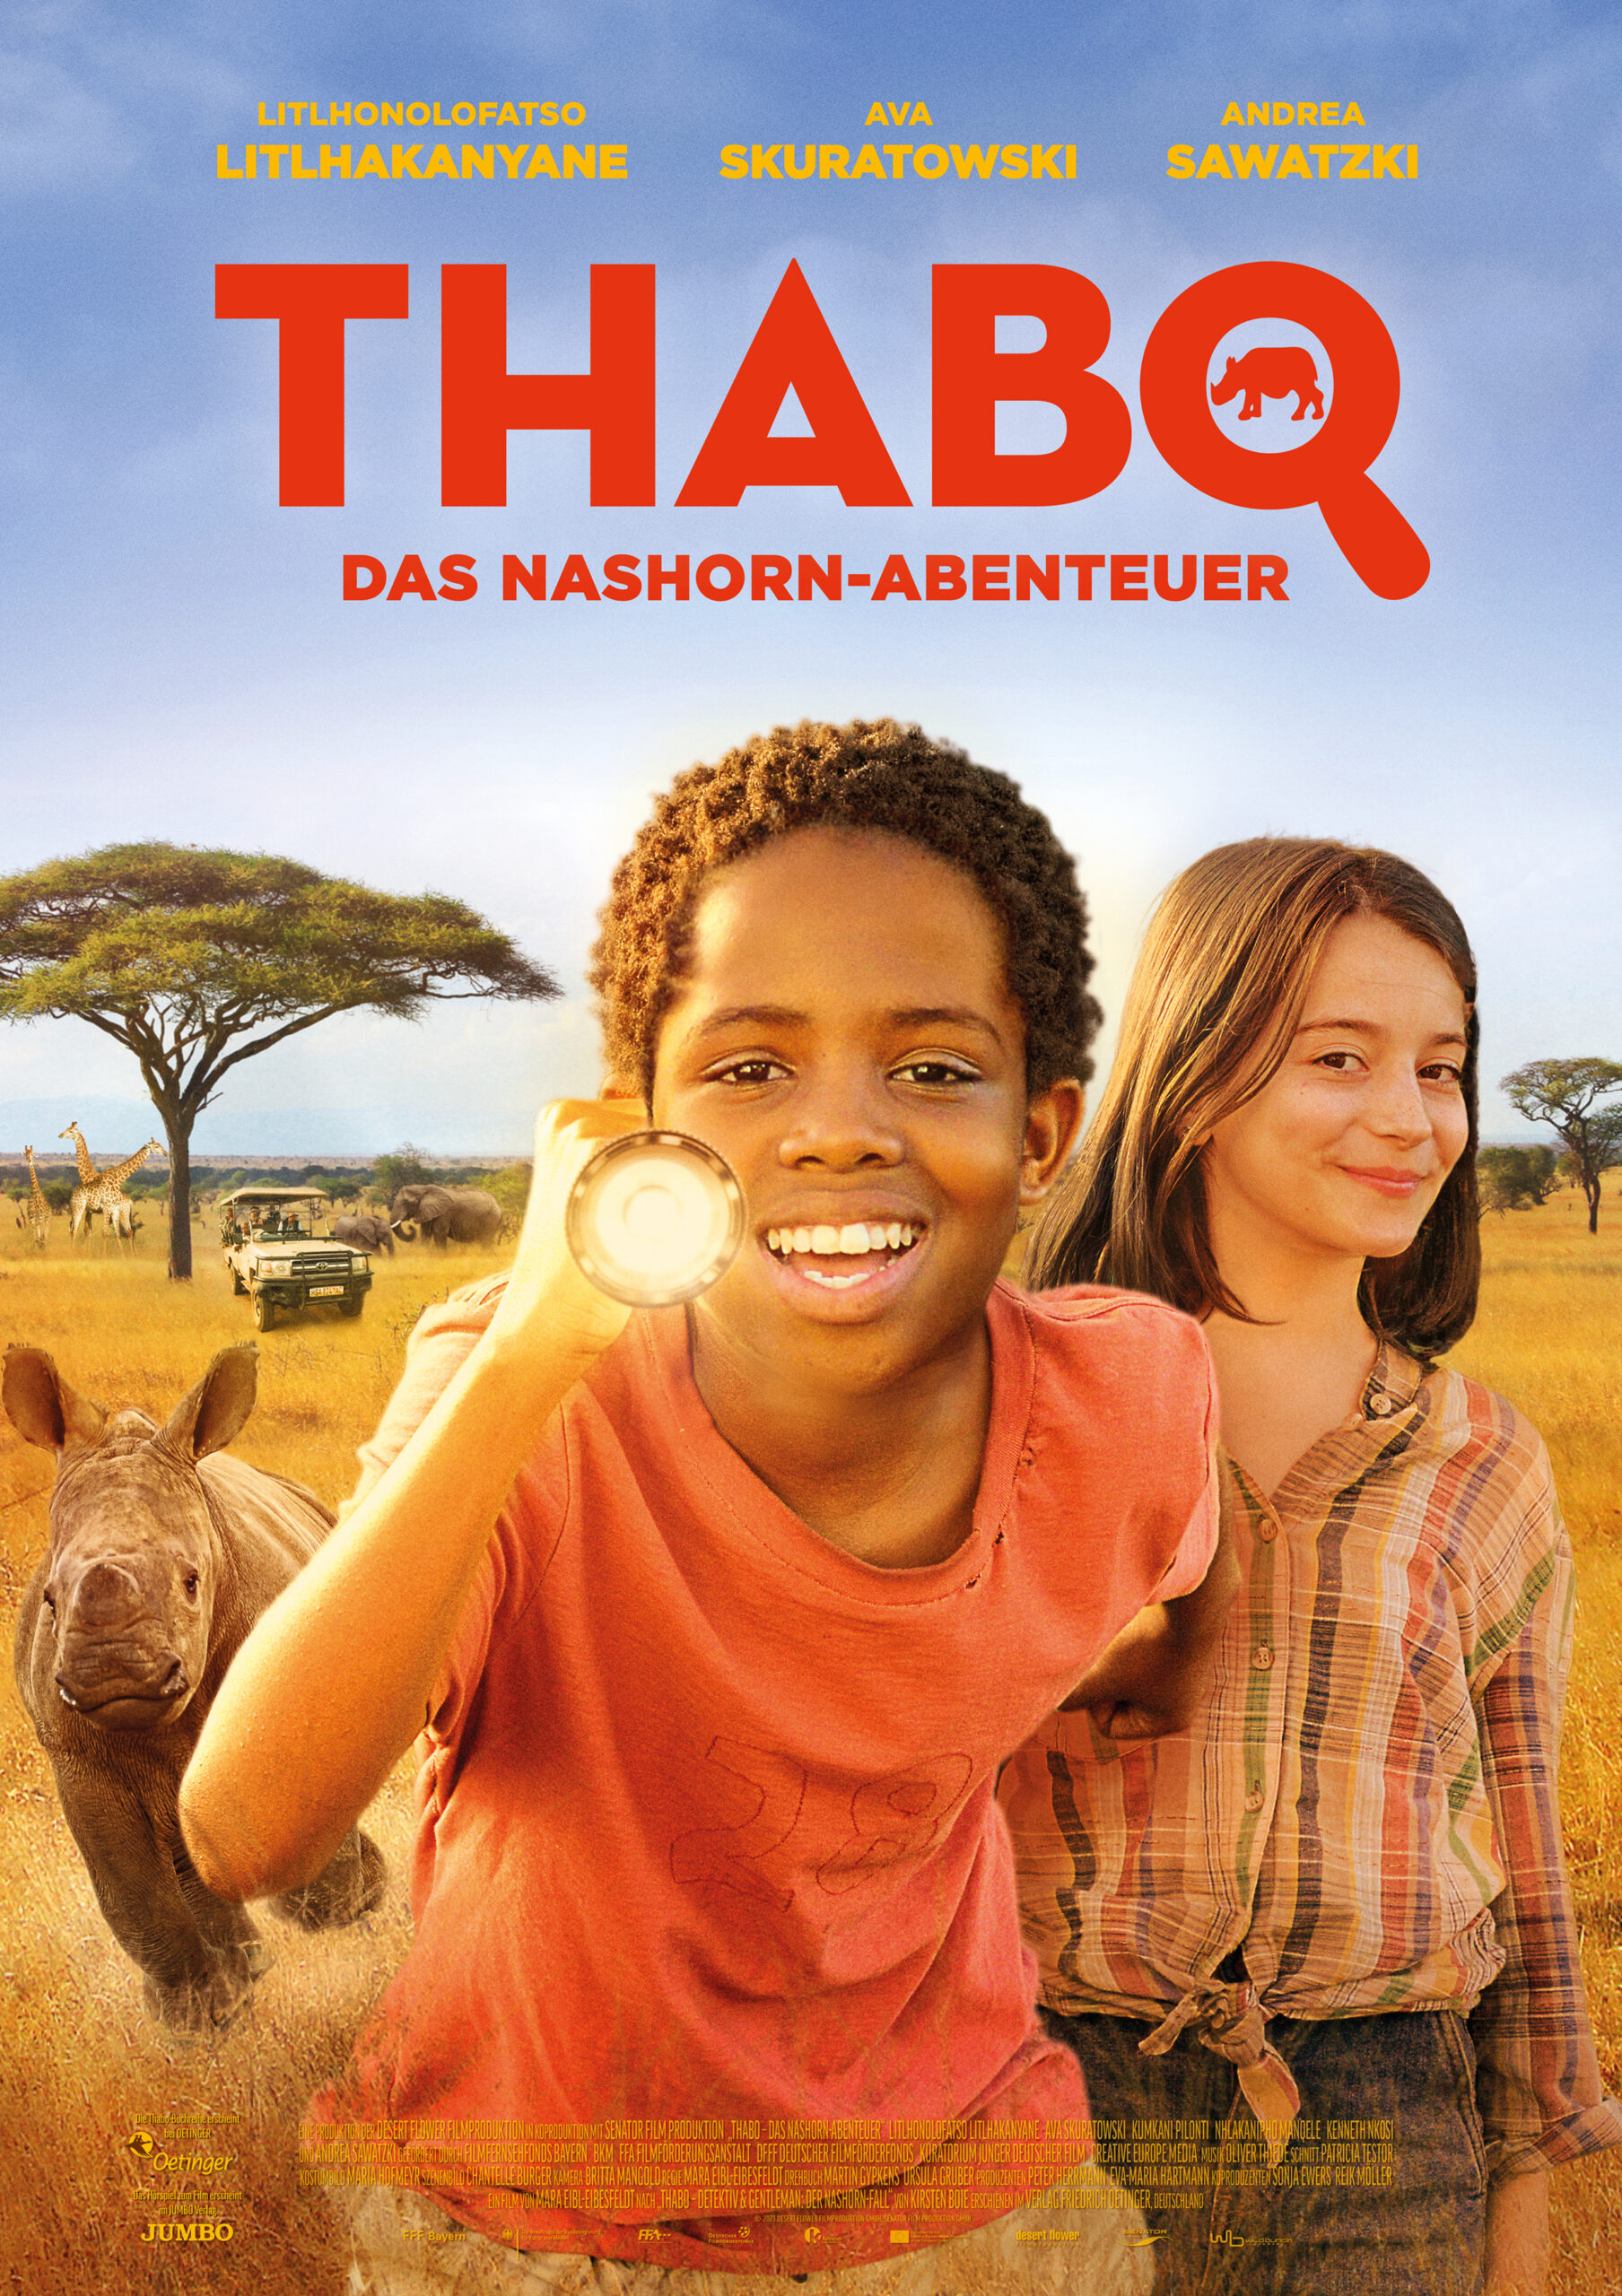 Thabo - Das Nashornabenteuer